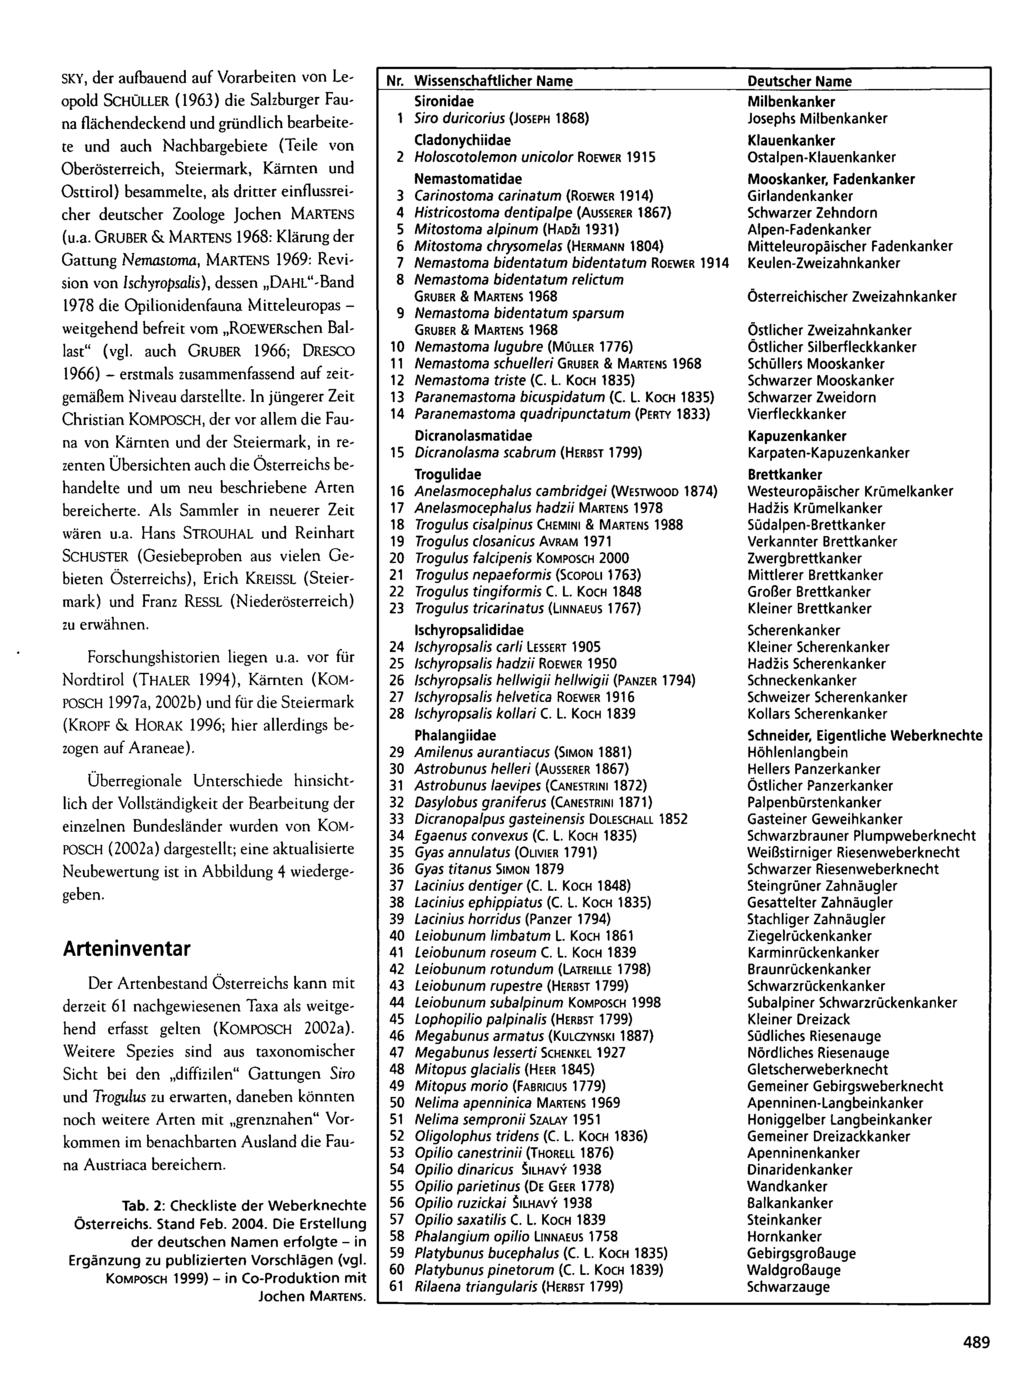 SKY, der aufbauend auf Vorarbeiten von Leopold SCHÜLLER (1963) die Salzburger Fauna flächendeckend und gründlich bearbeitete und auch Nachbargebiete (Teile von Oberösterreich, Steiermark, Kärnten und